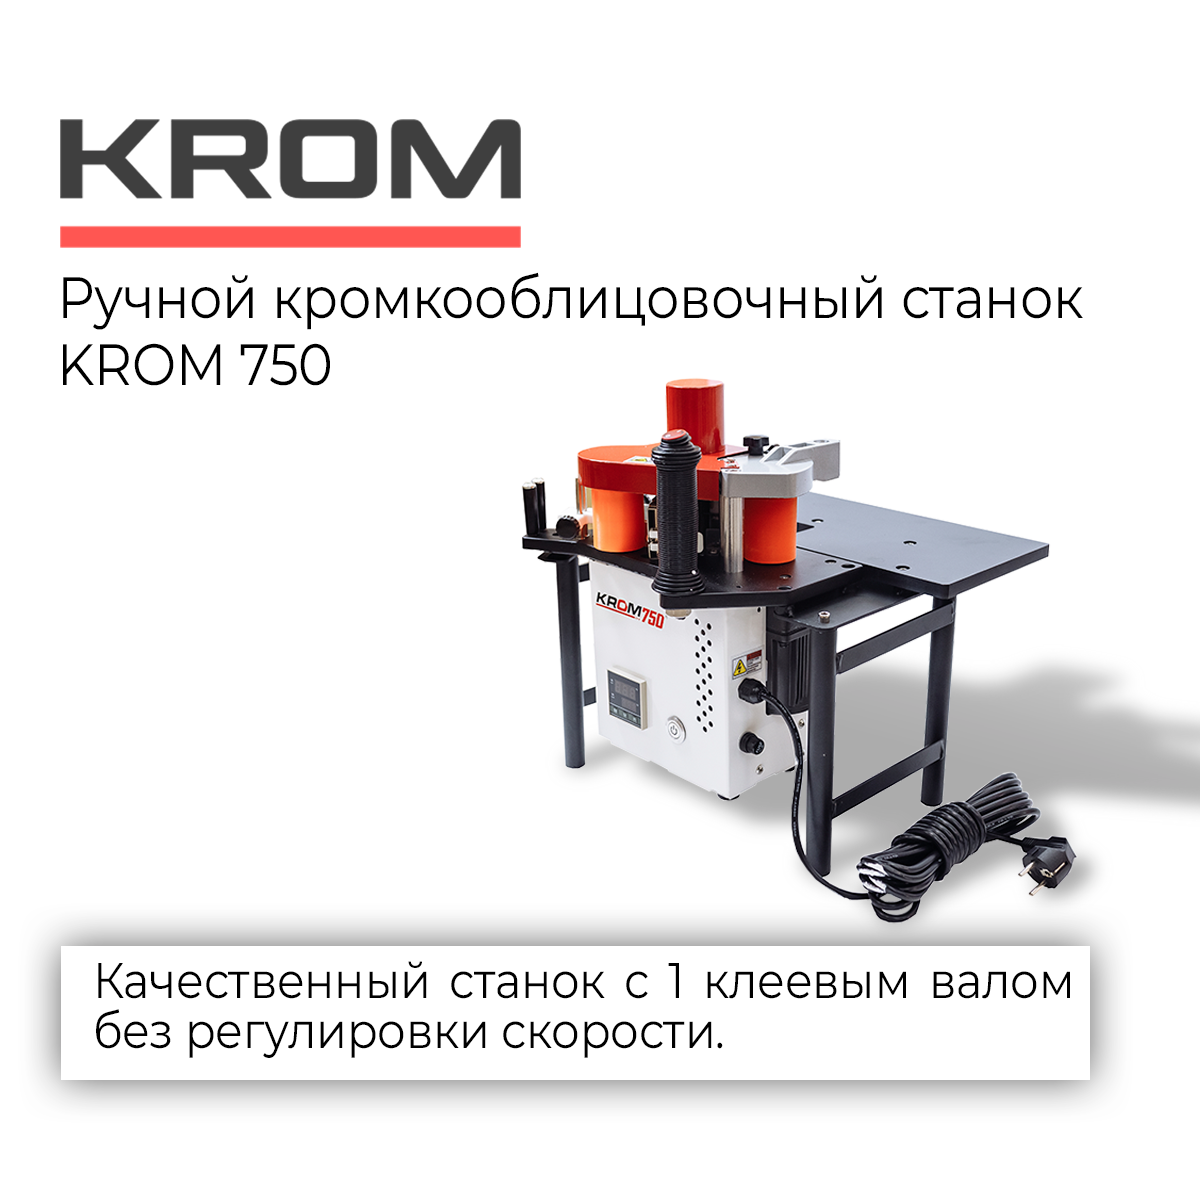 Ручной кромкооблицовочный станок KROM 750